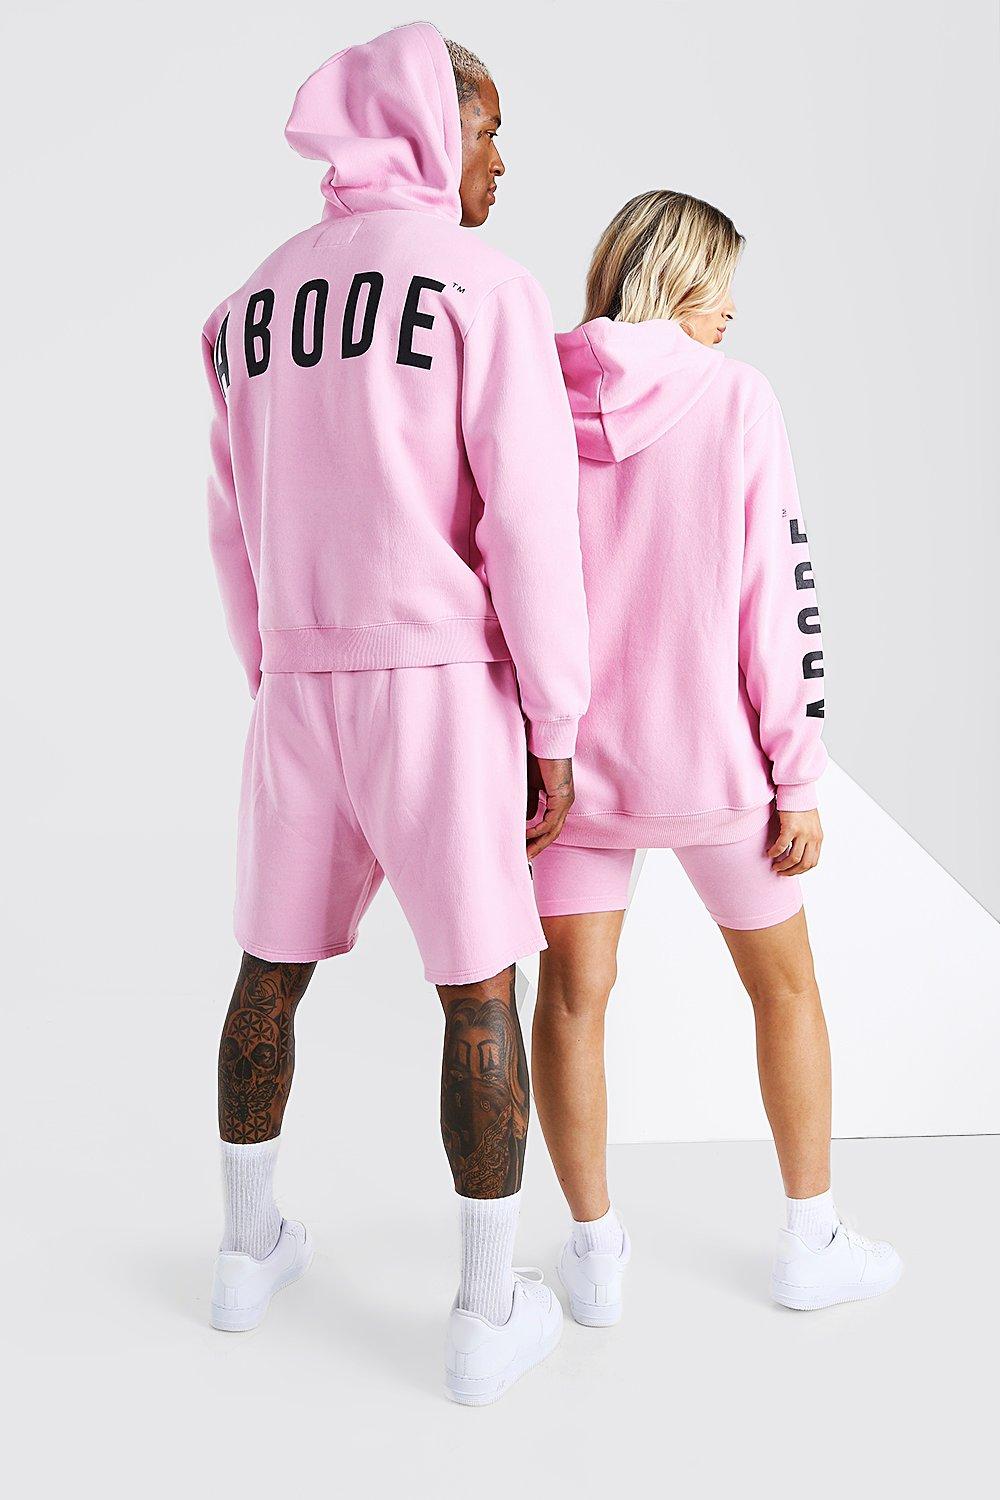 boohoo ladies hoodies